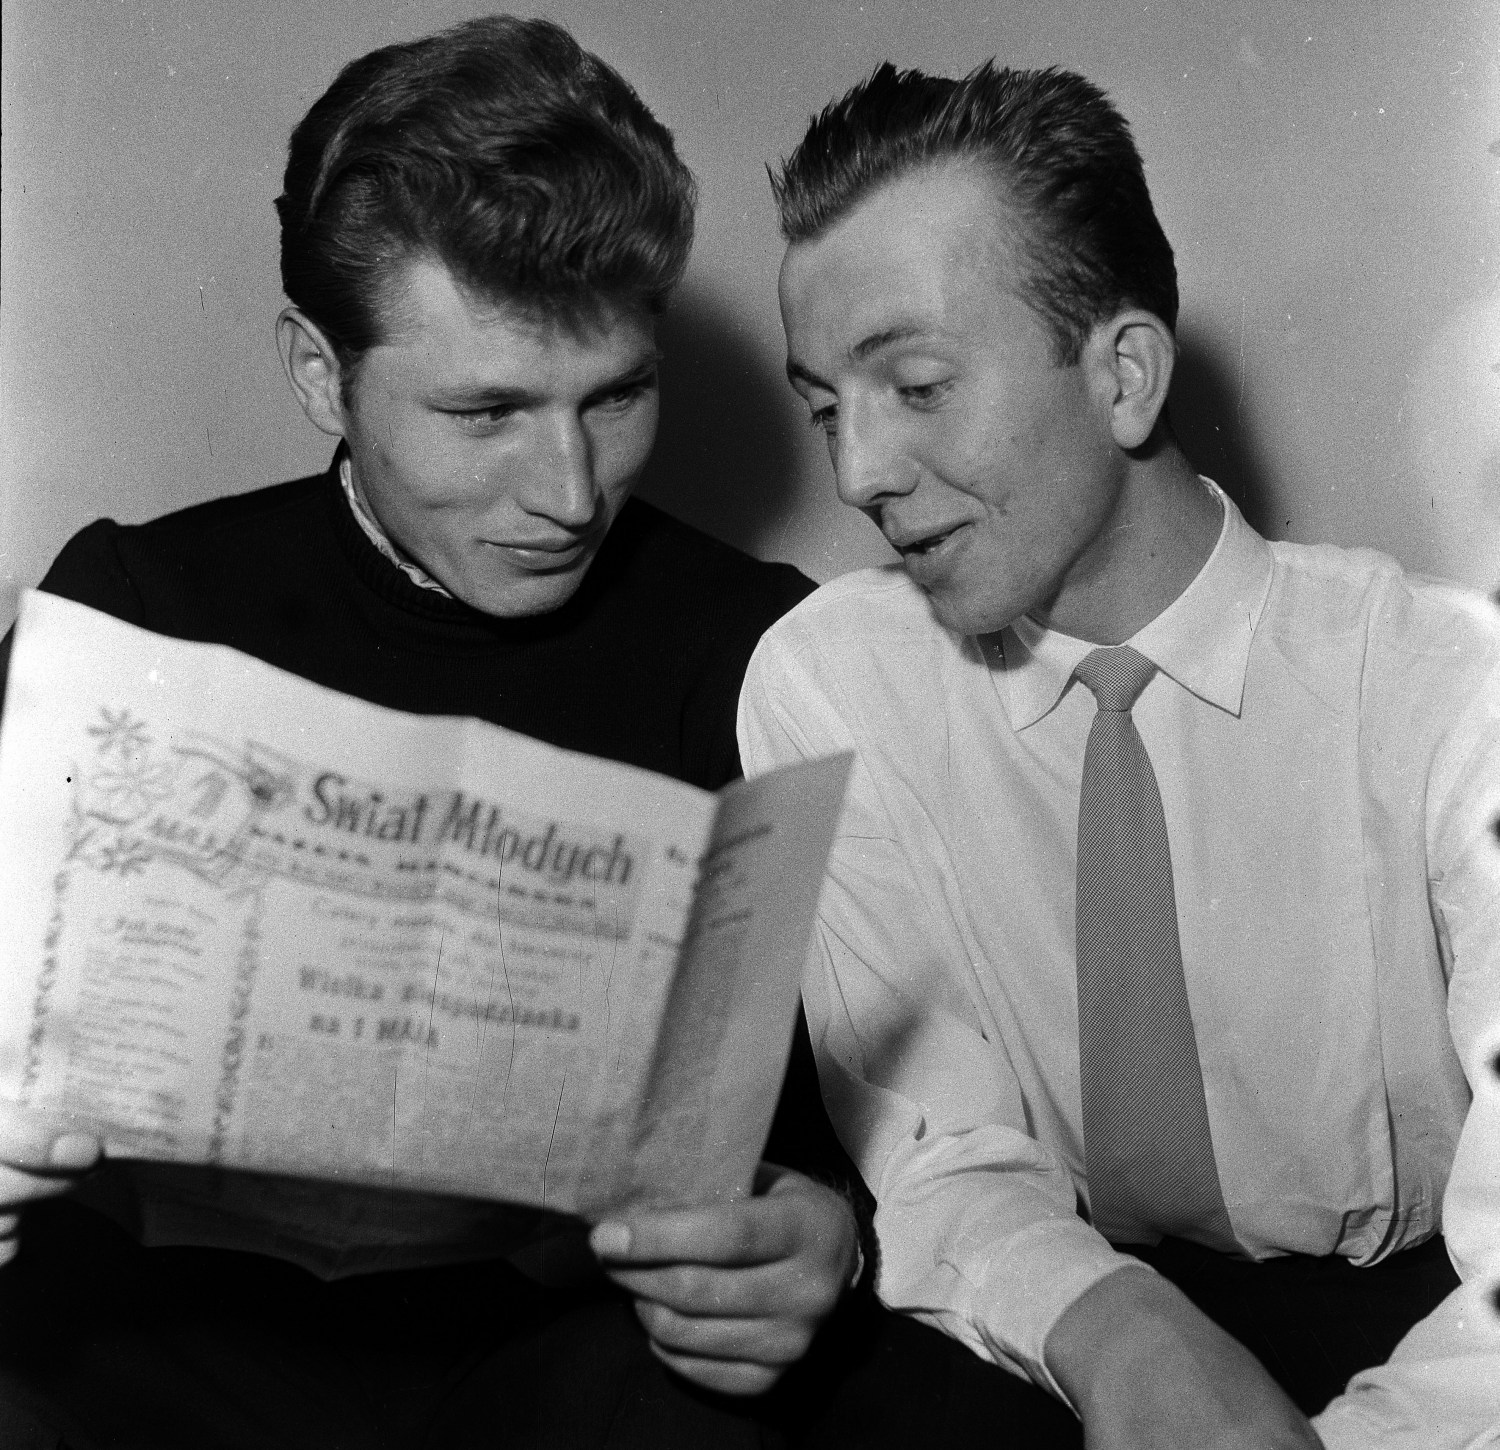 Polscy kolarze: Stanislaw Krolak i Henryk Kowalski czytają "Świat Młodych", 1956, fot. Jerzy Dąbrowski/Forum